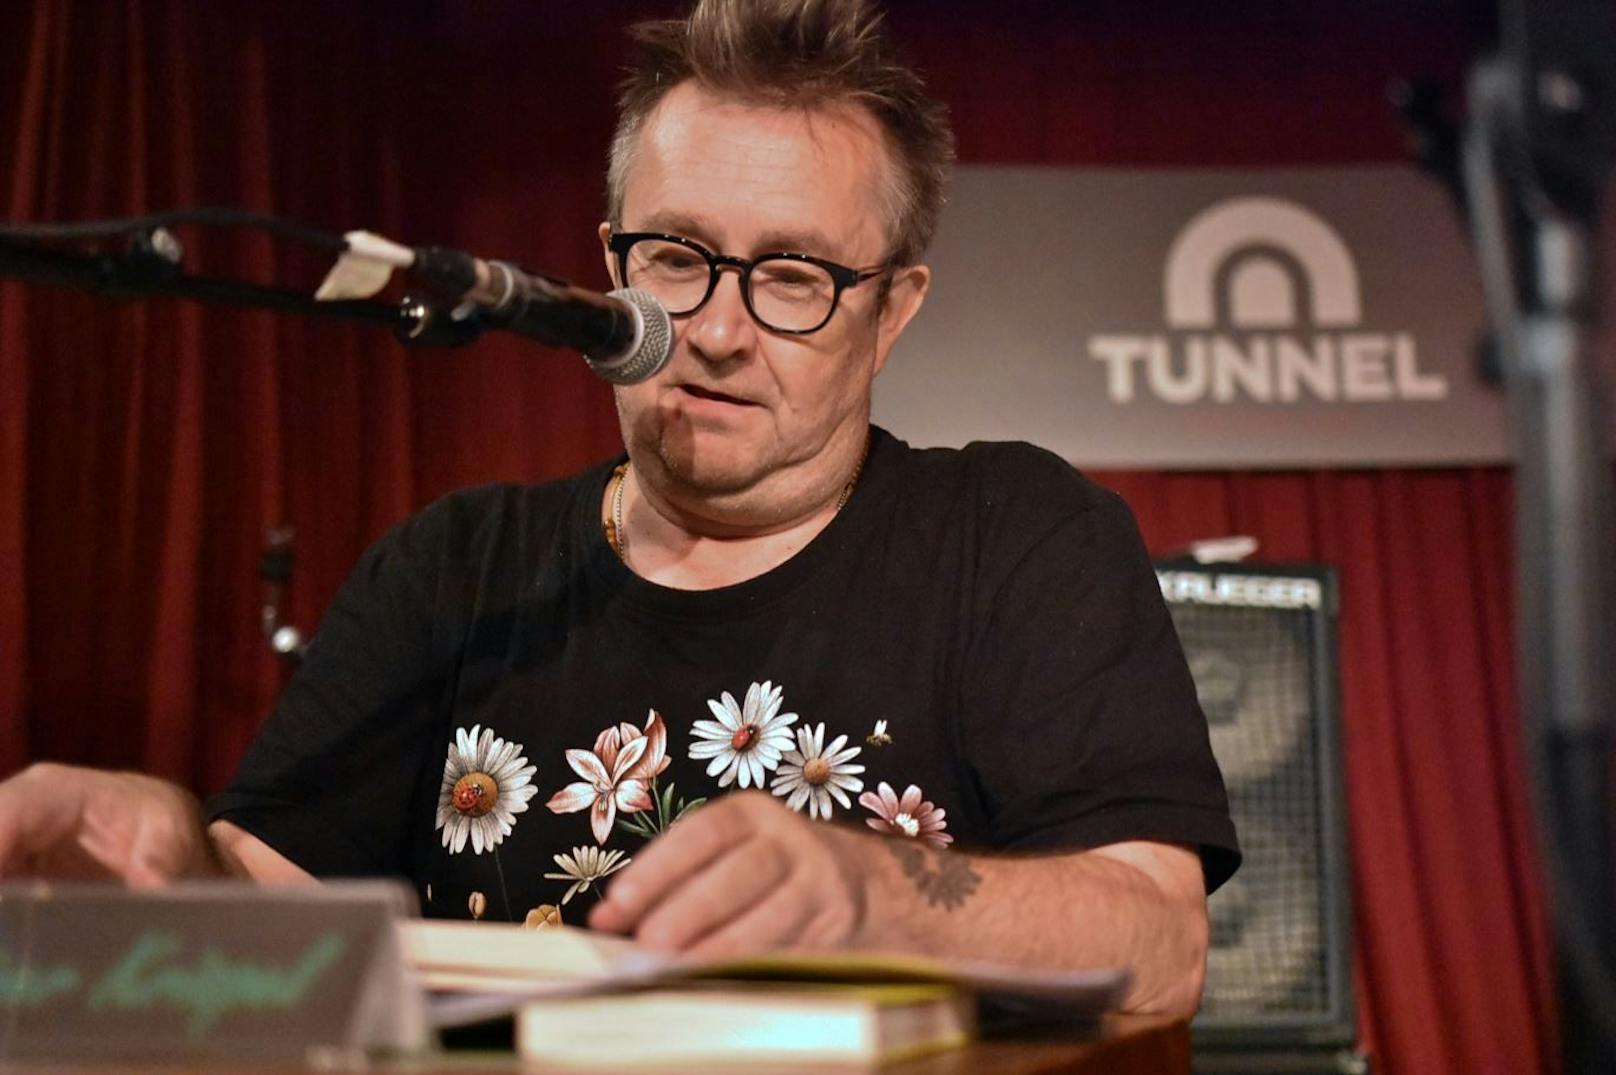 Sänger und Autor Rainer Krispl beim Reading Rock live im Tunnel.